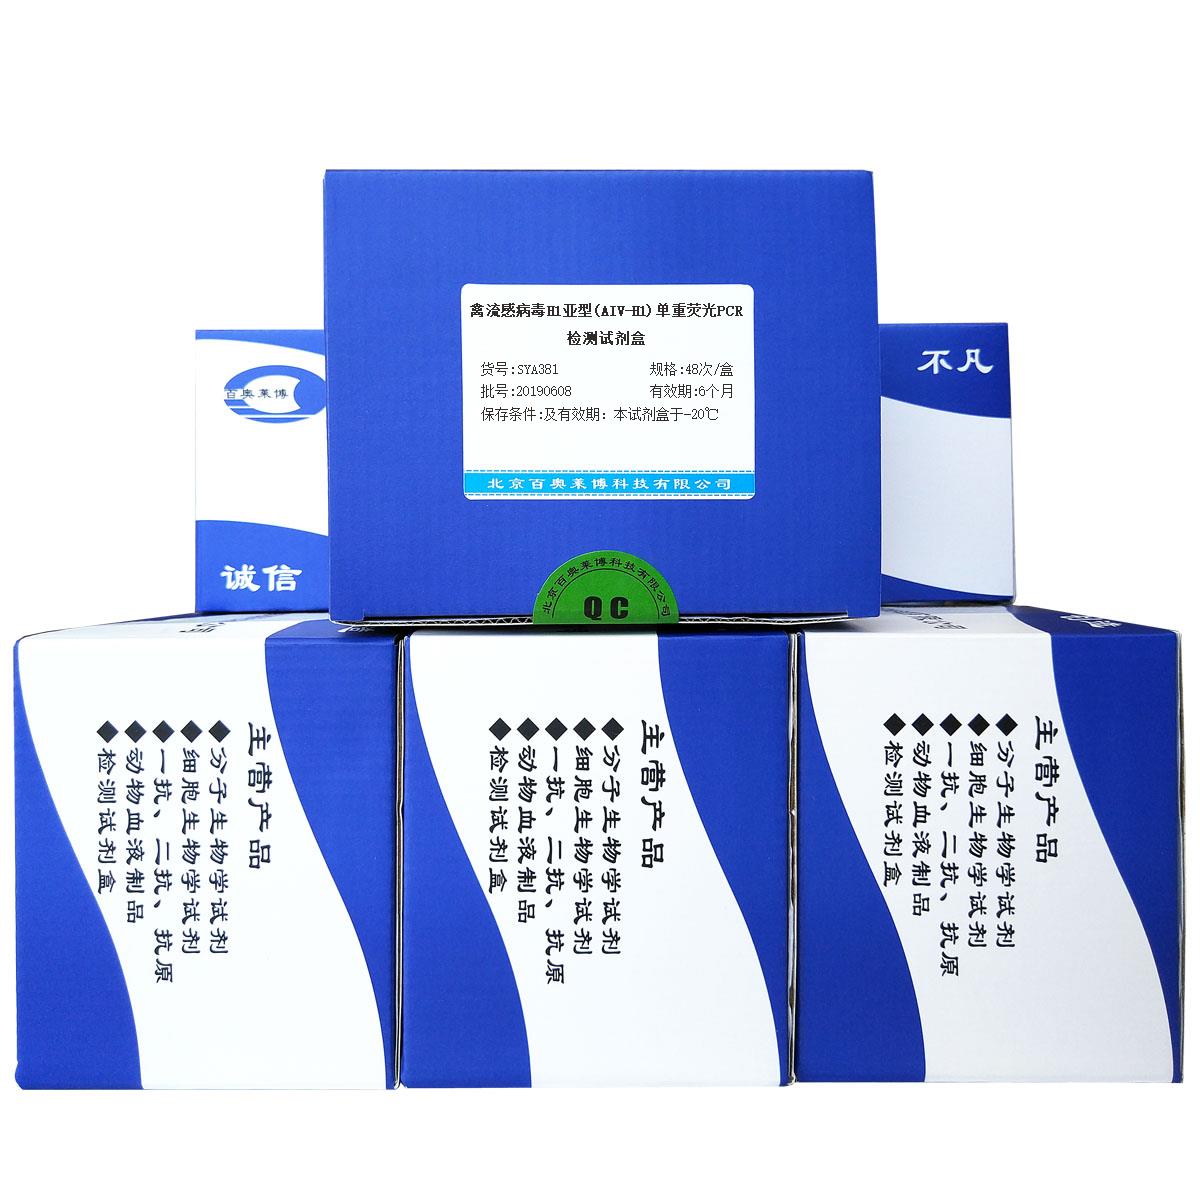 禽流感病毒H1亚型(AIV-H1)单重荧光PCR检测试剂盒